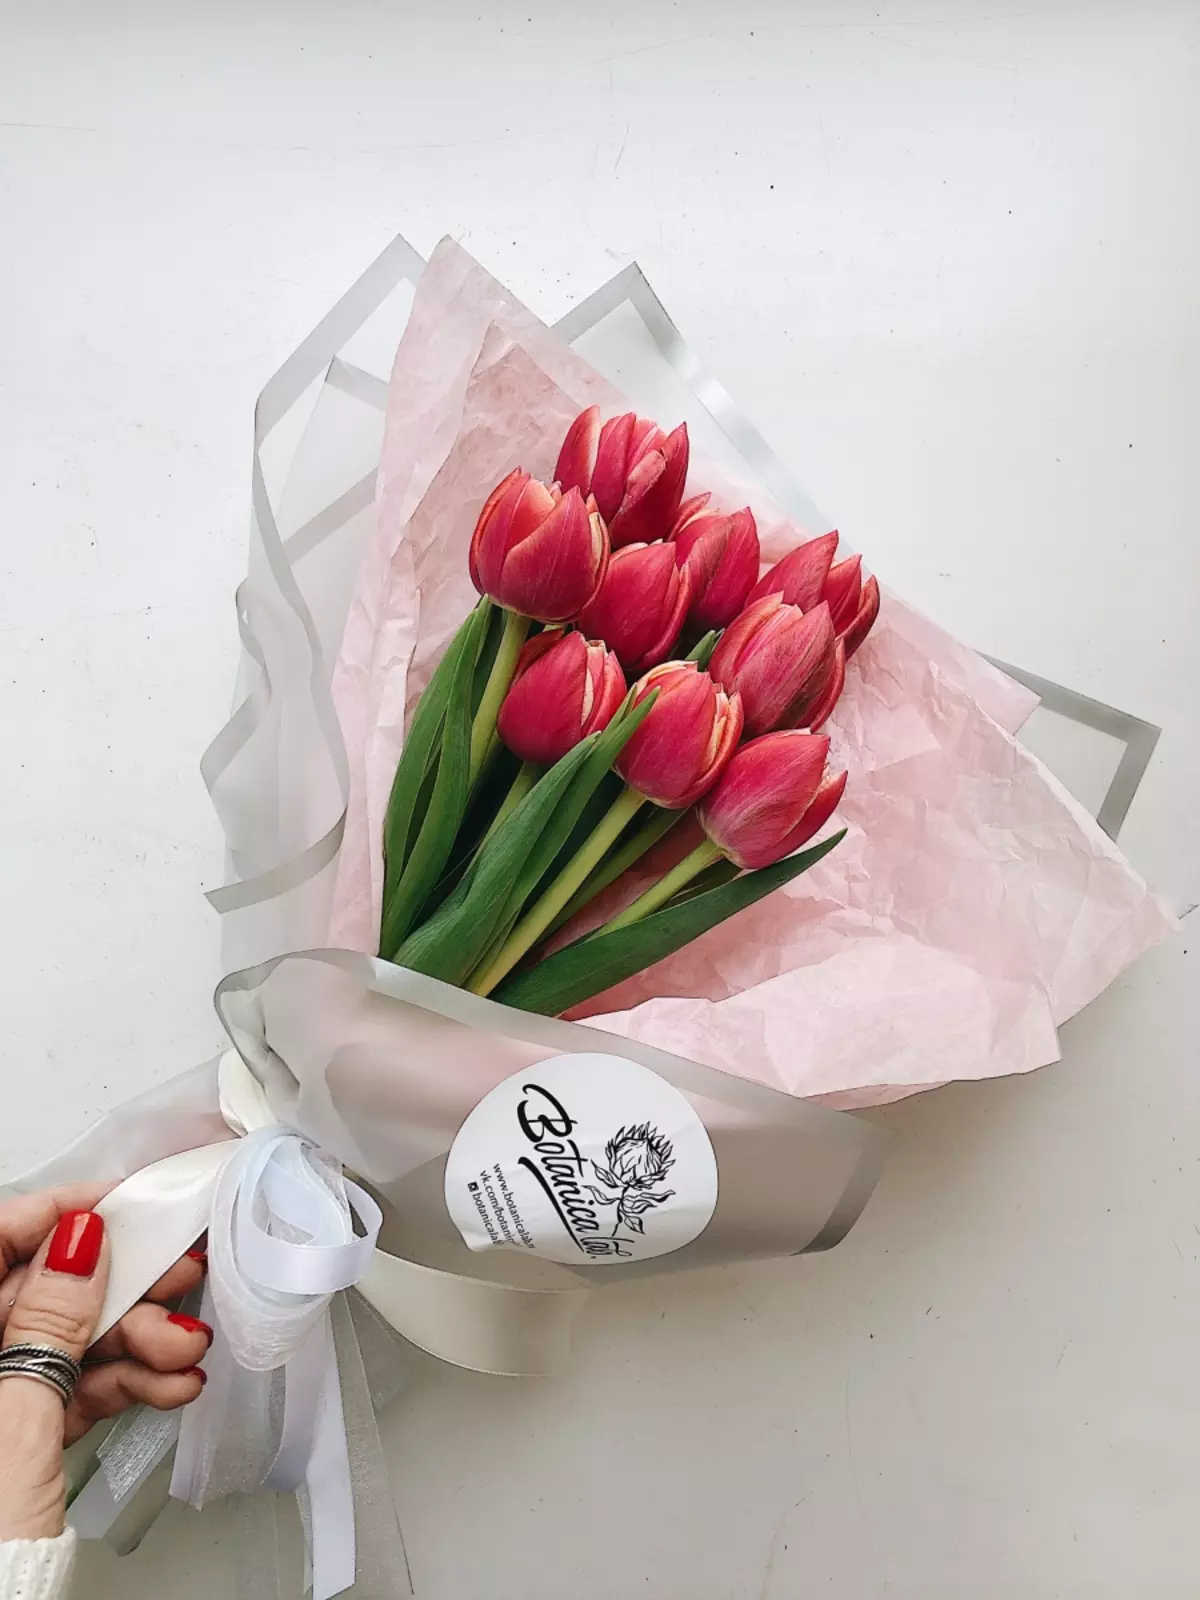 Blomster den 8. marts: Hvad giver piger og kvinder? Hvad er bedre at give min kone? Hvad sælges normalt? Hvorfor er det muligt at give tulipaner? 18190_21